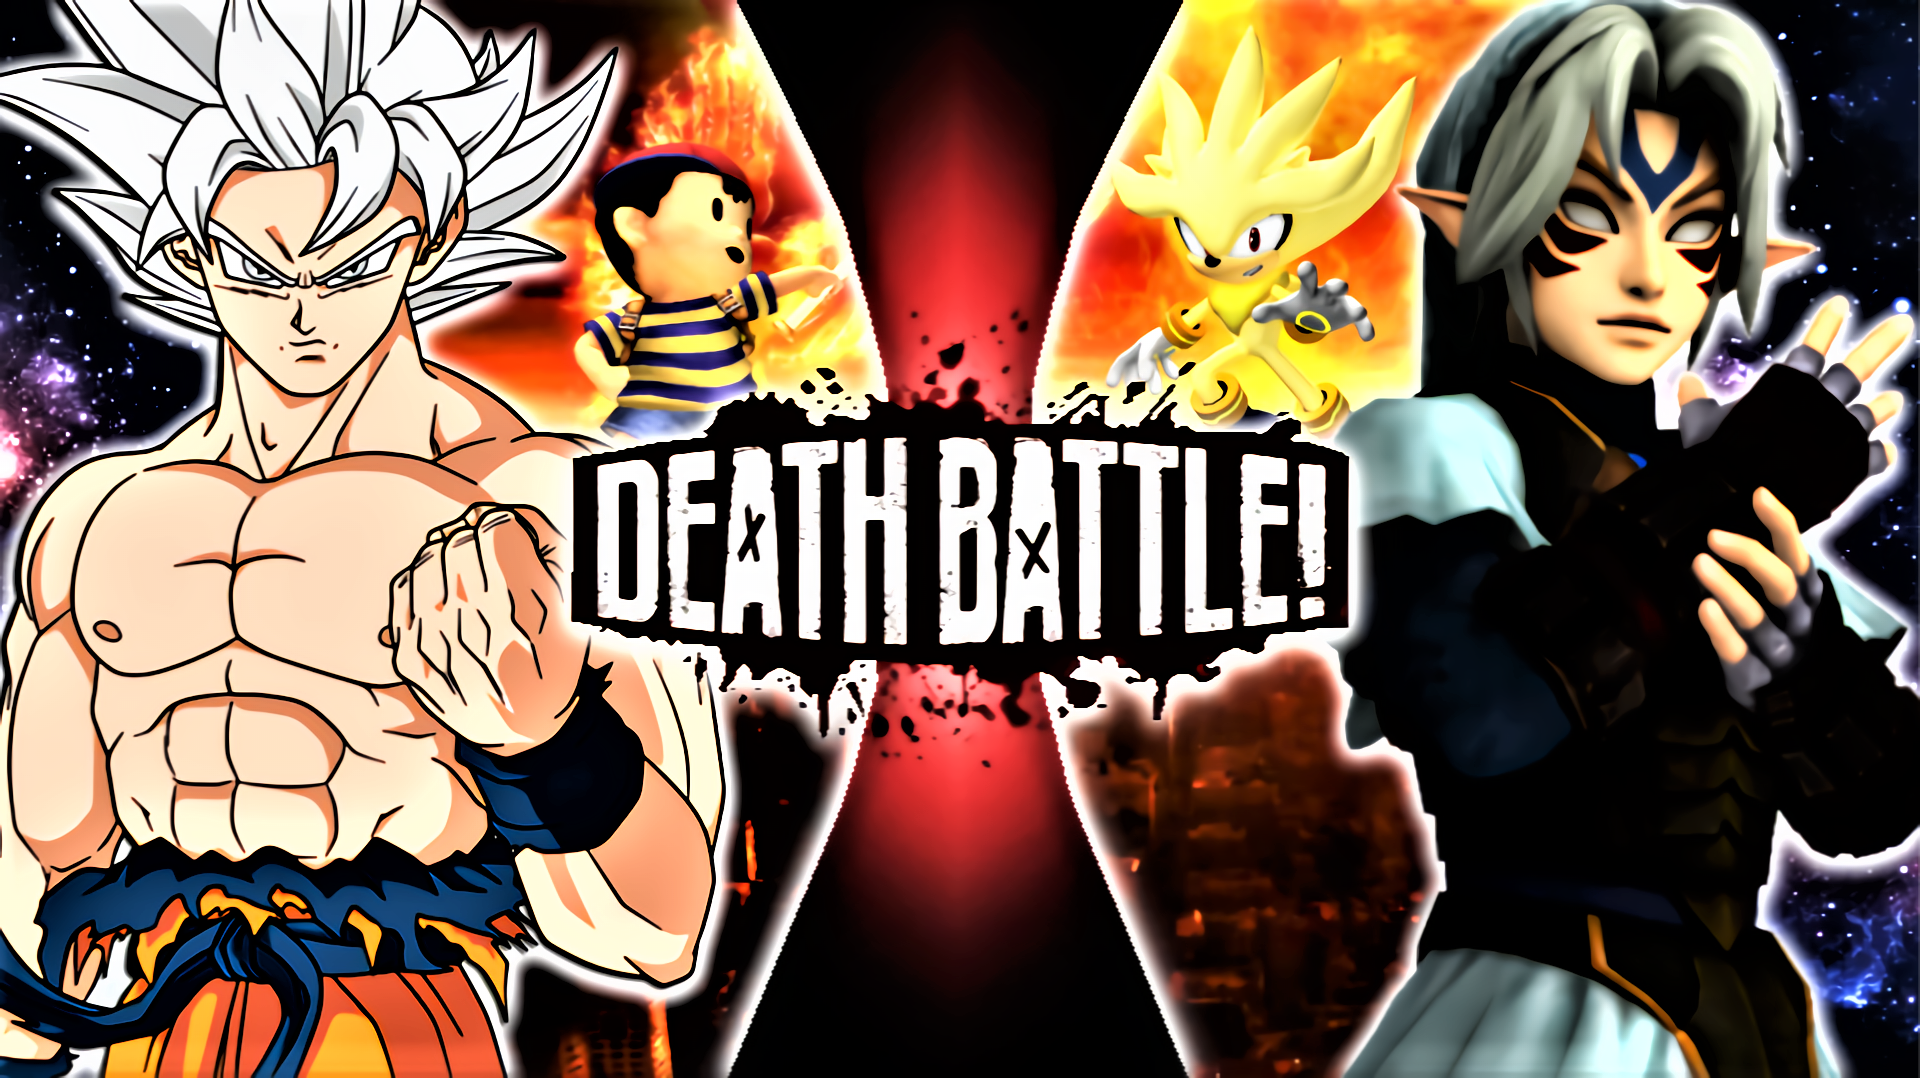 Link Vs Son Goku Death Battle Fanon Wiki Fandom Powered By Wikia